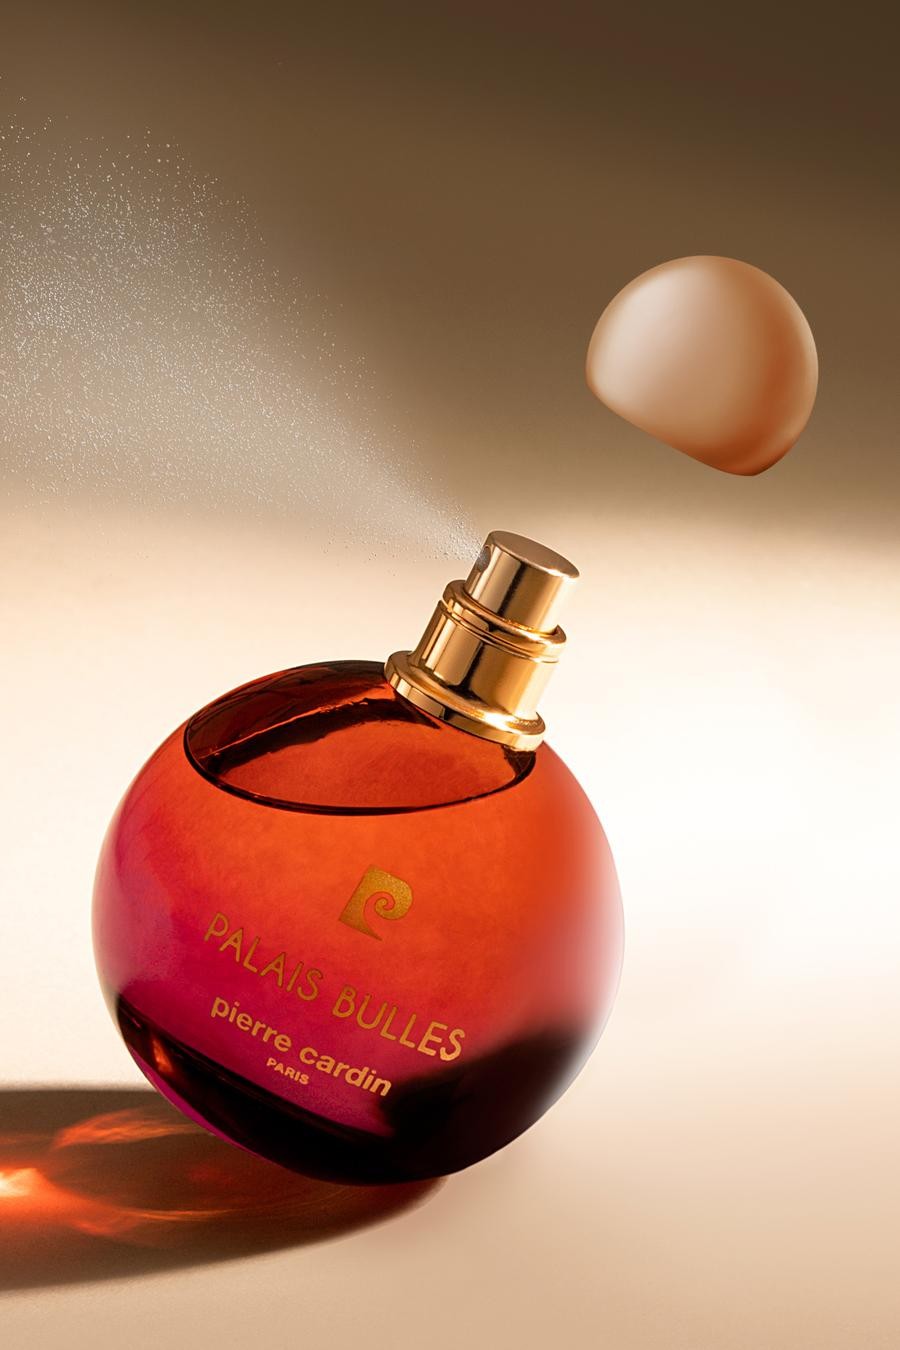 Pierre Cardin Kadın Parfüm 100 ml